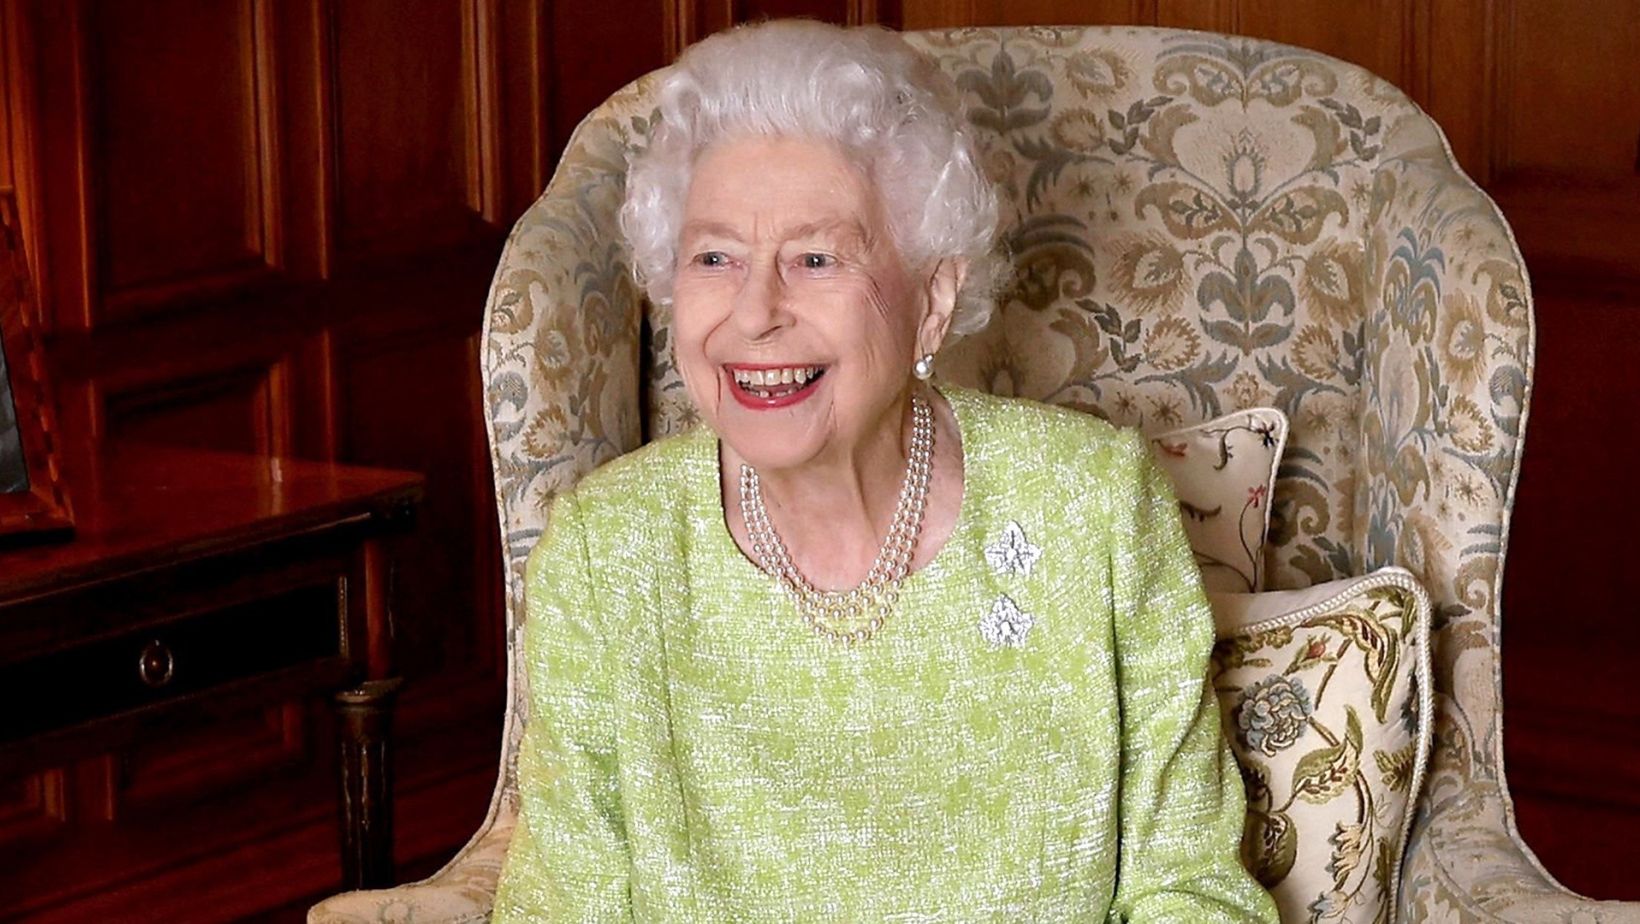 The Longest-reigning British Queen ever was Elizabeth II.